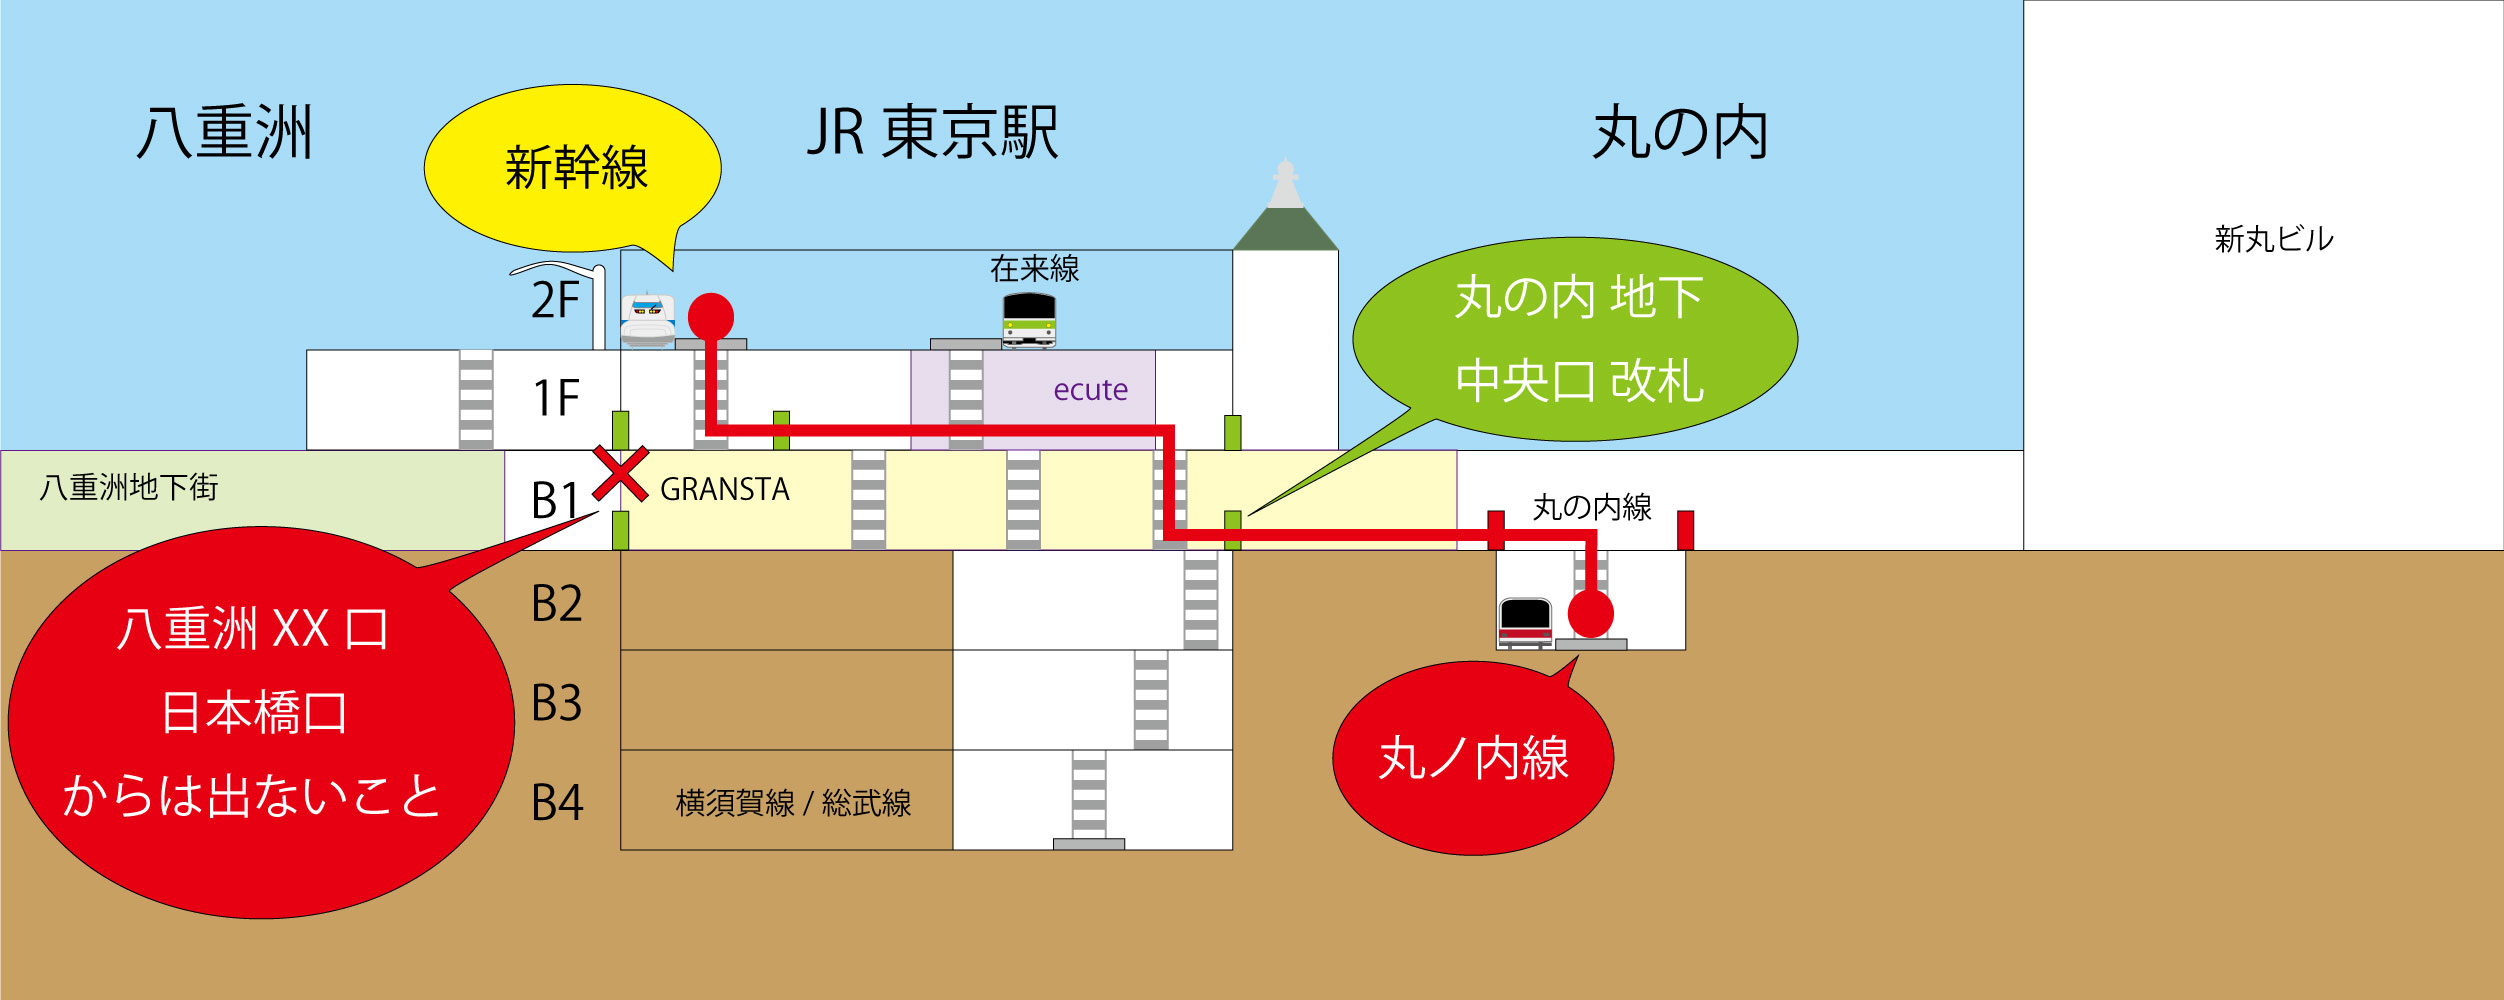 東京駅から丸ノ内線 東京駅 に乗り換える 東京スパイシー